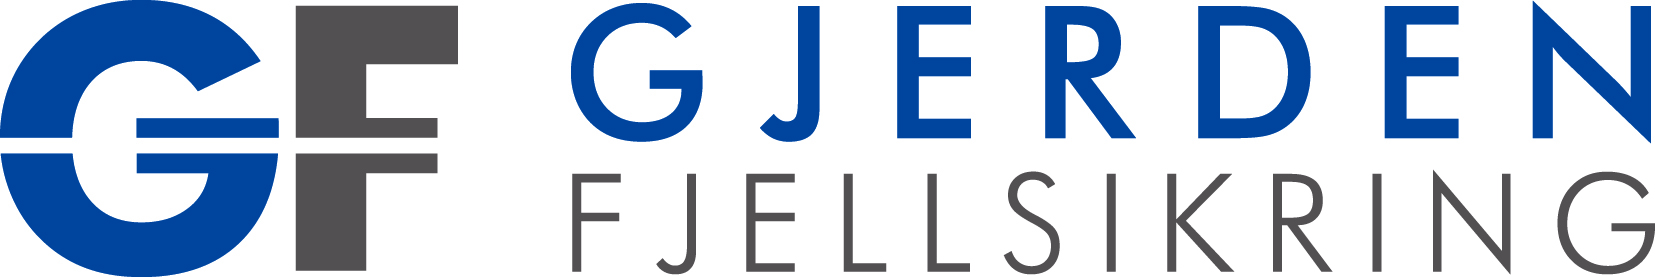 Gjerden Fjellsikring Logo